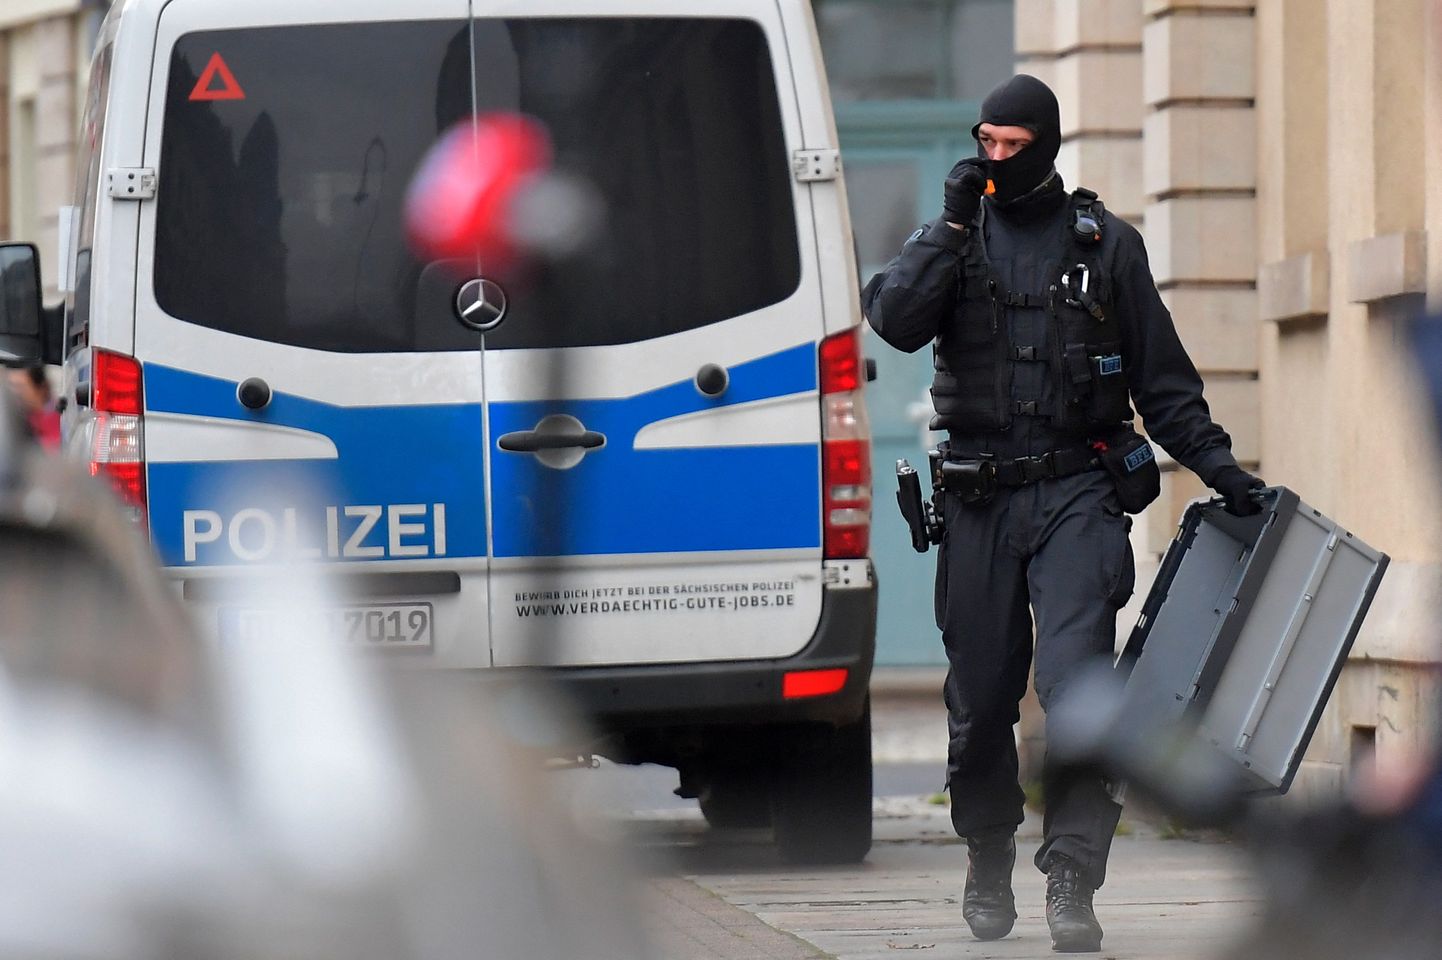 Vācijas policija un īpašie spēki trešdien sākuši operāciju Drēzdenē.